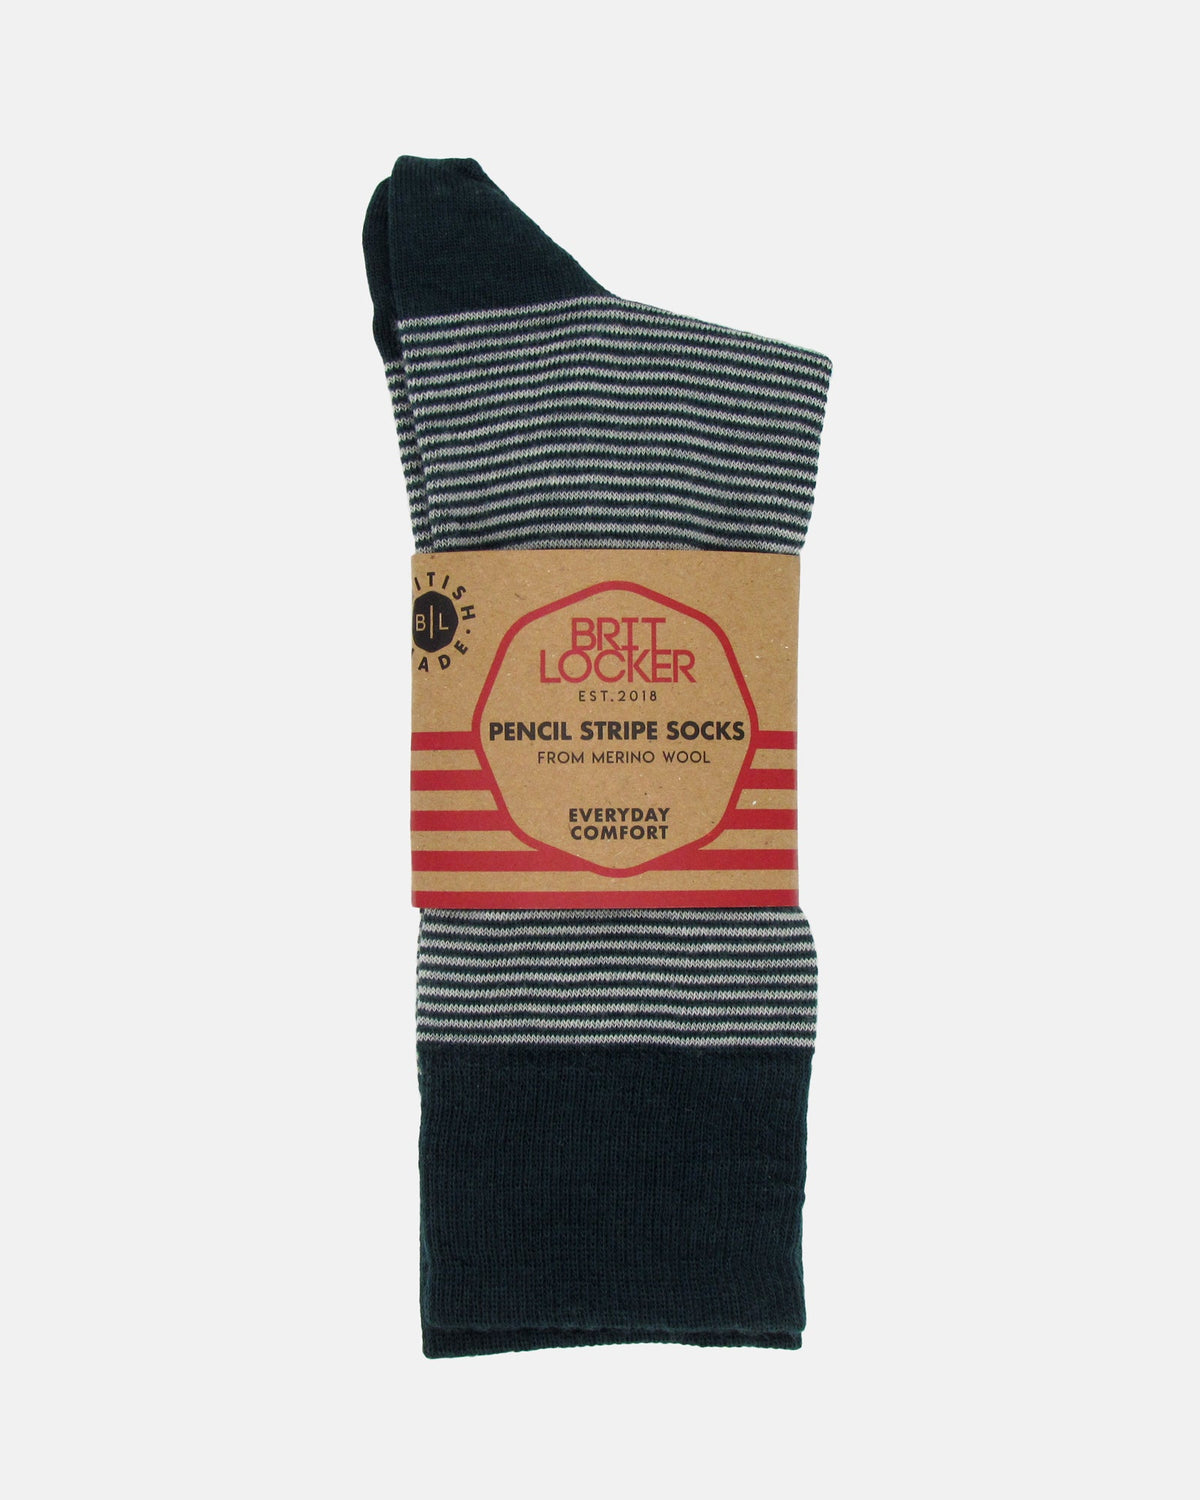 Pencil Stripe Wool Socks - Bottle Green/Ecru - BRIT LOCKER